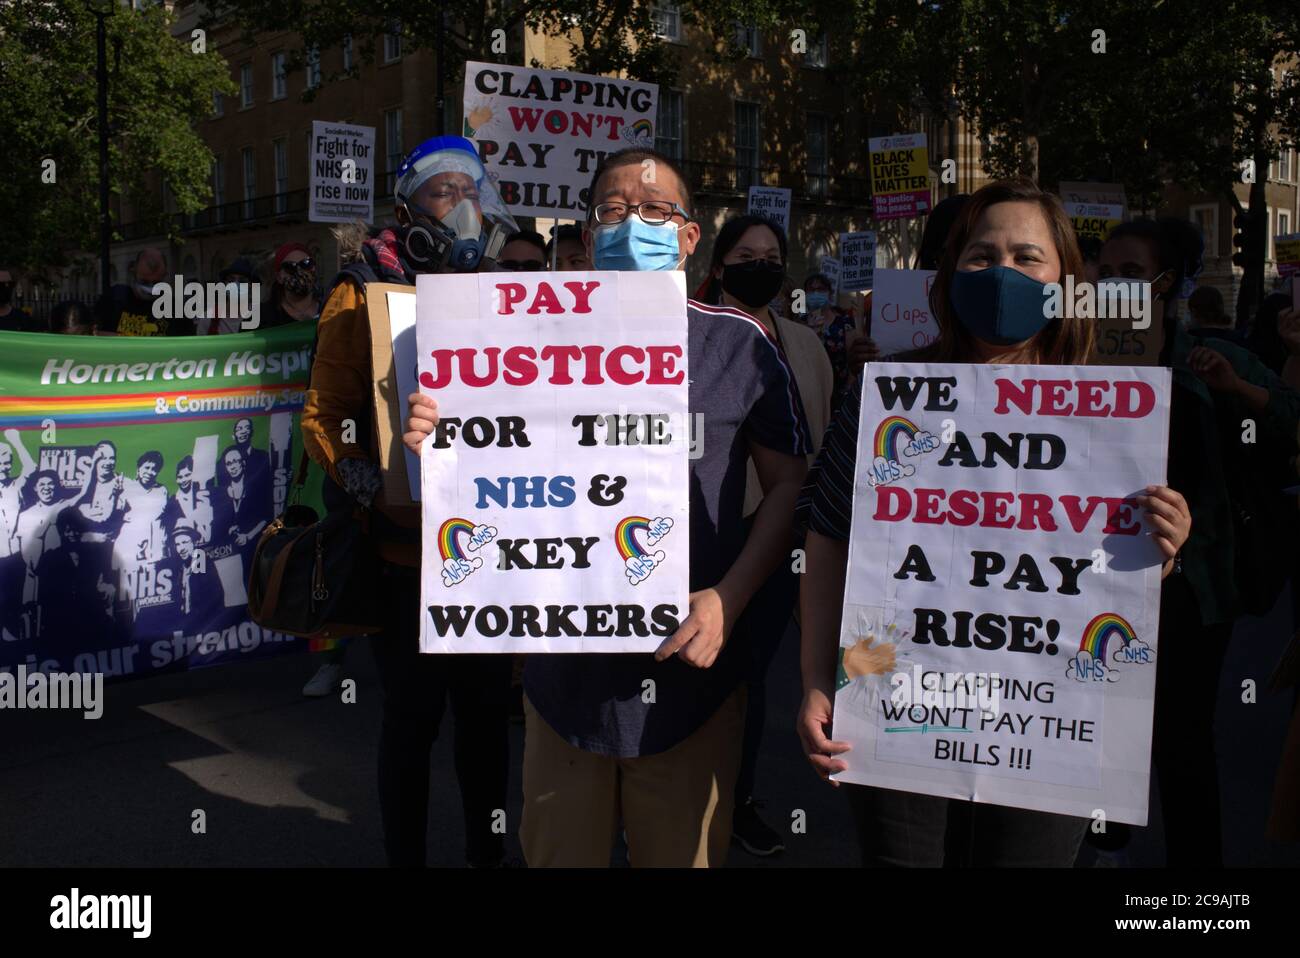 Giustizia salariale per NHS e lavoratori chiave 29/07/20 Foto Stock